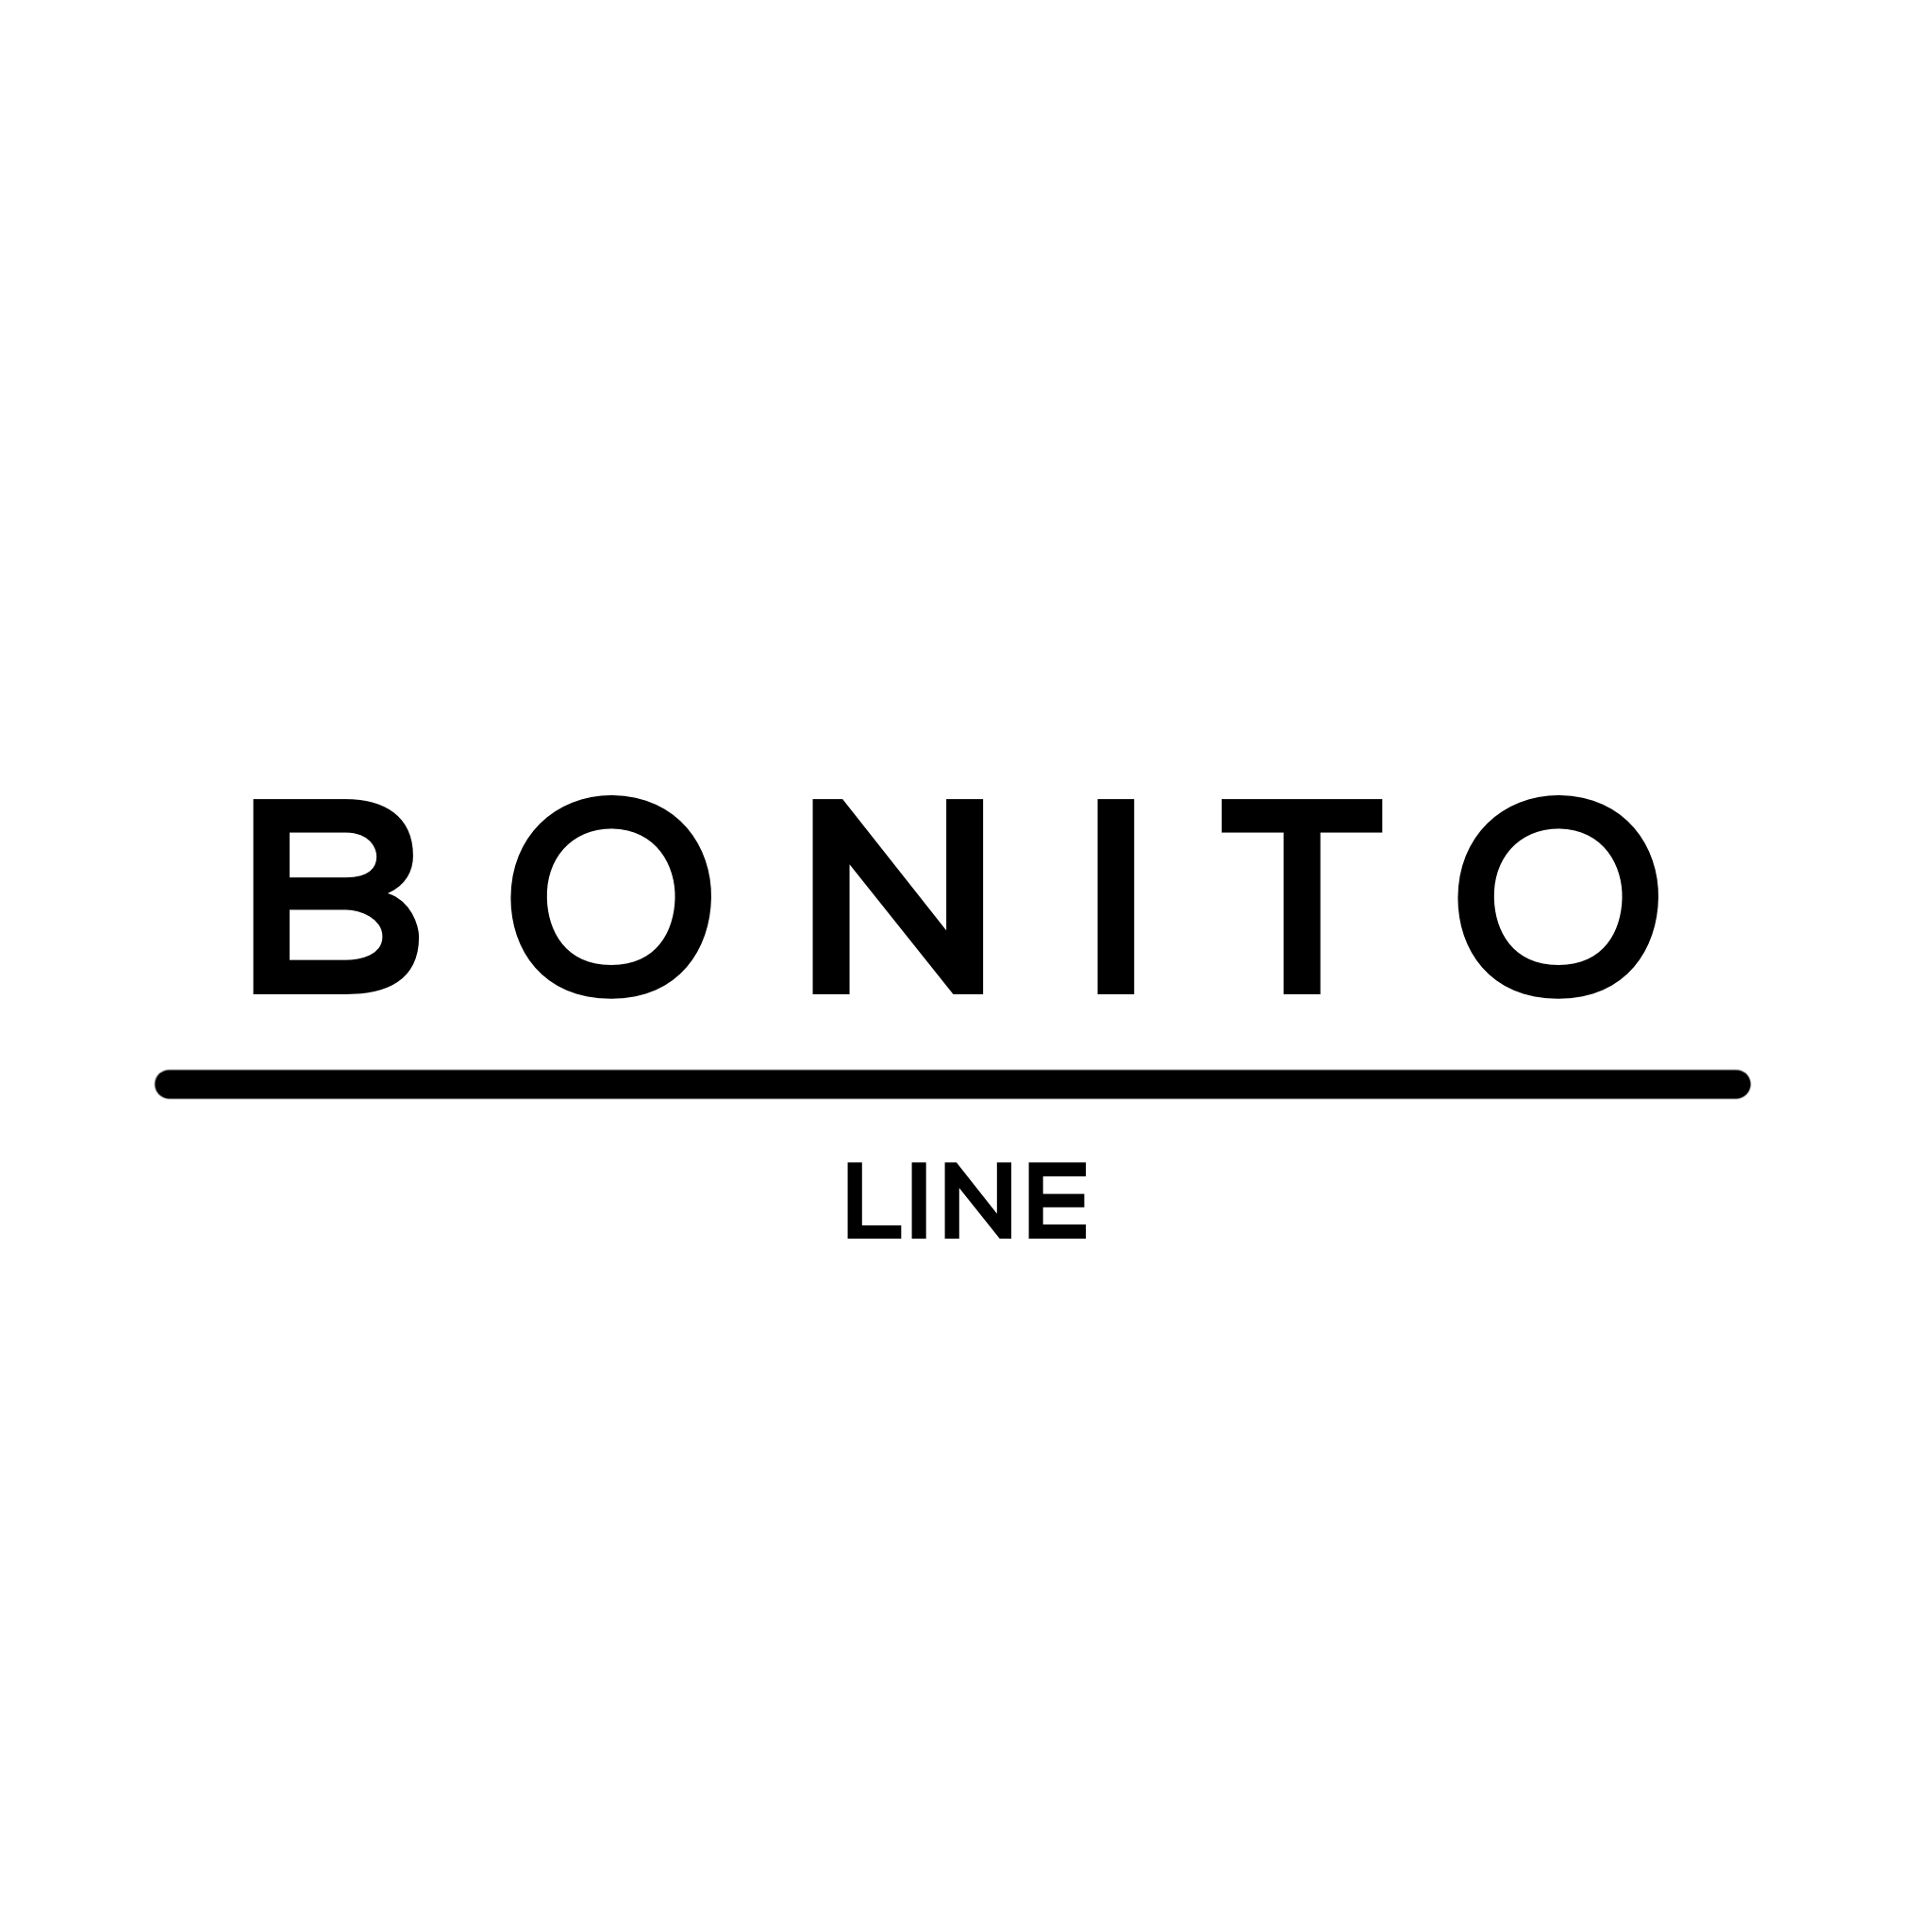 Bonito Line